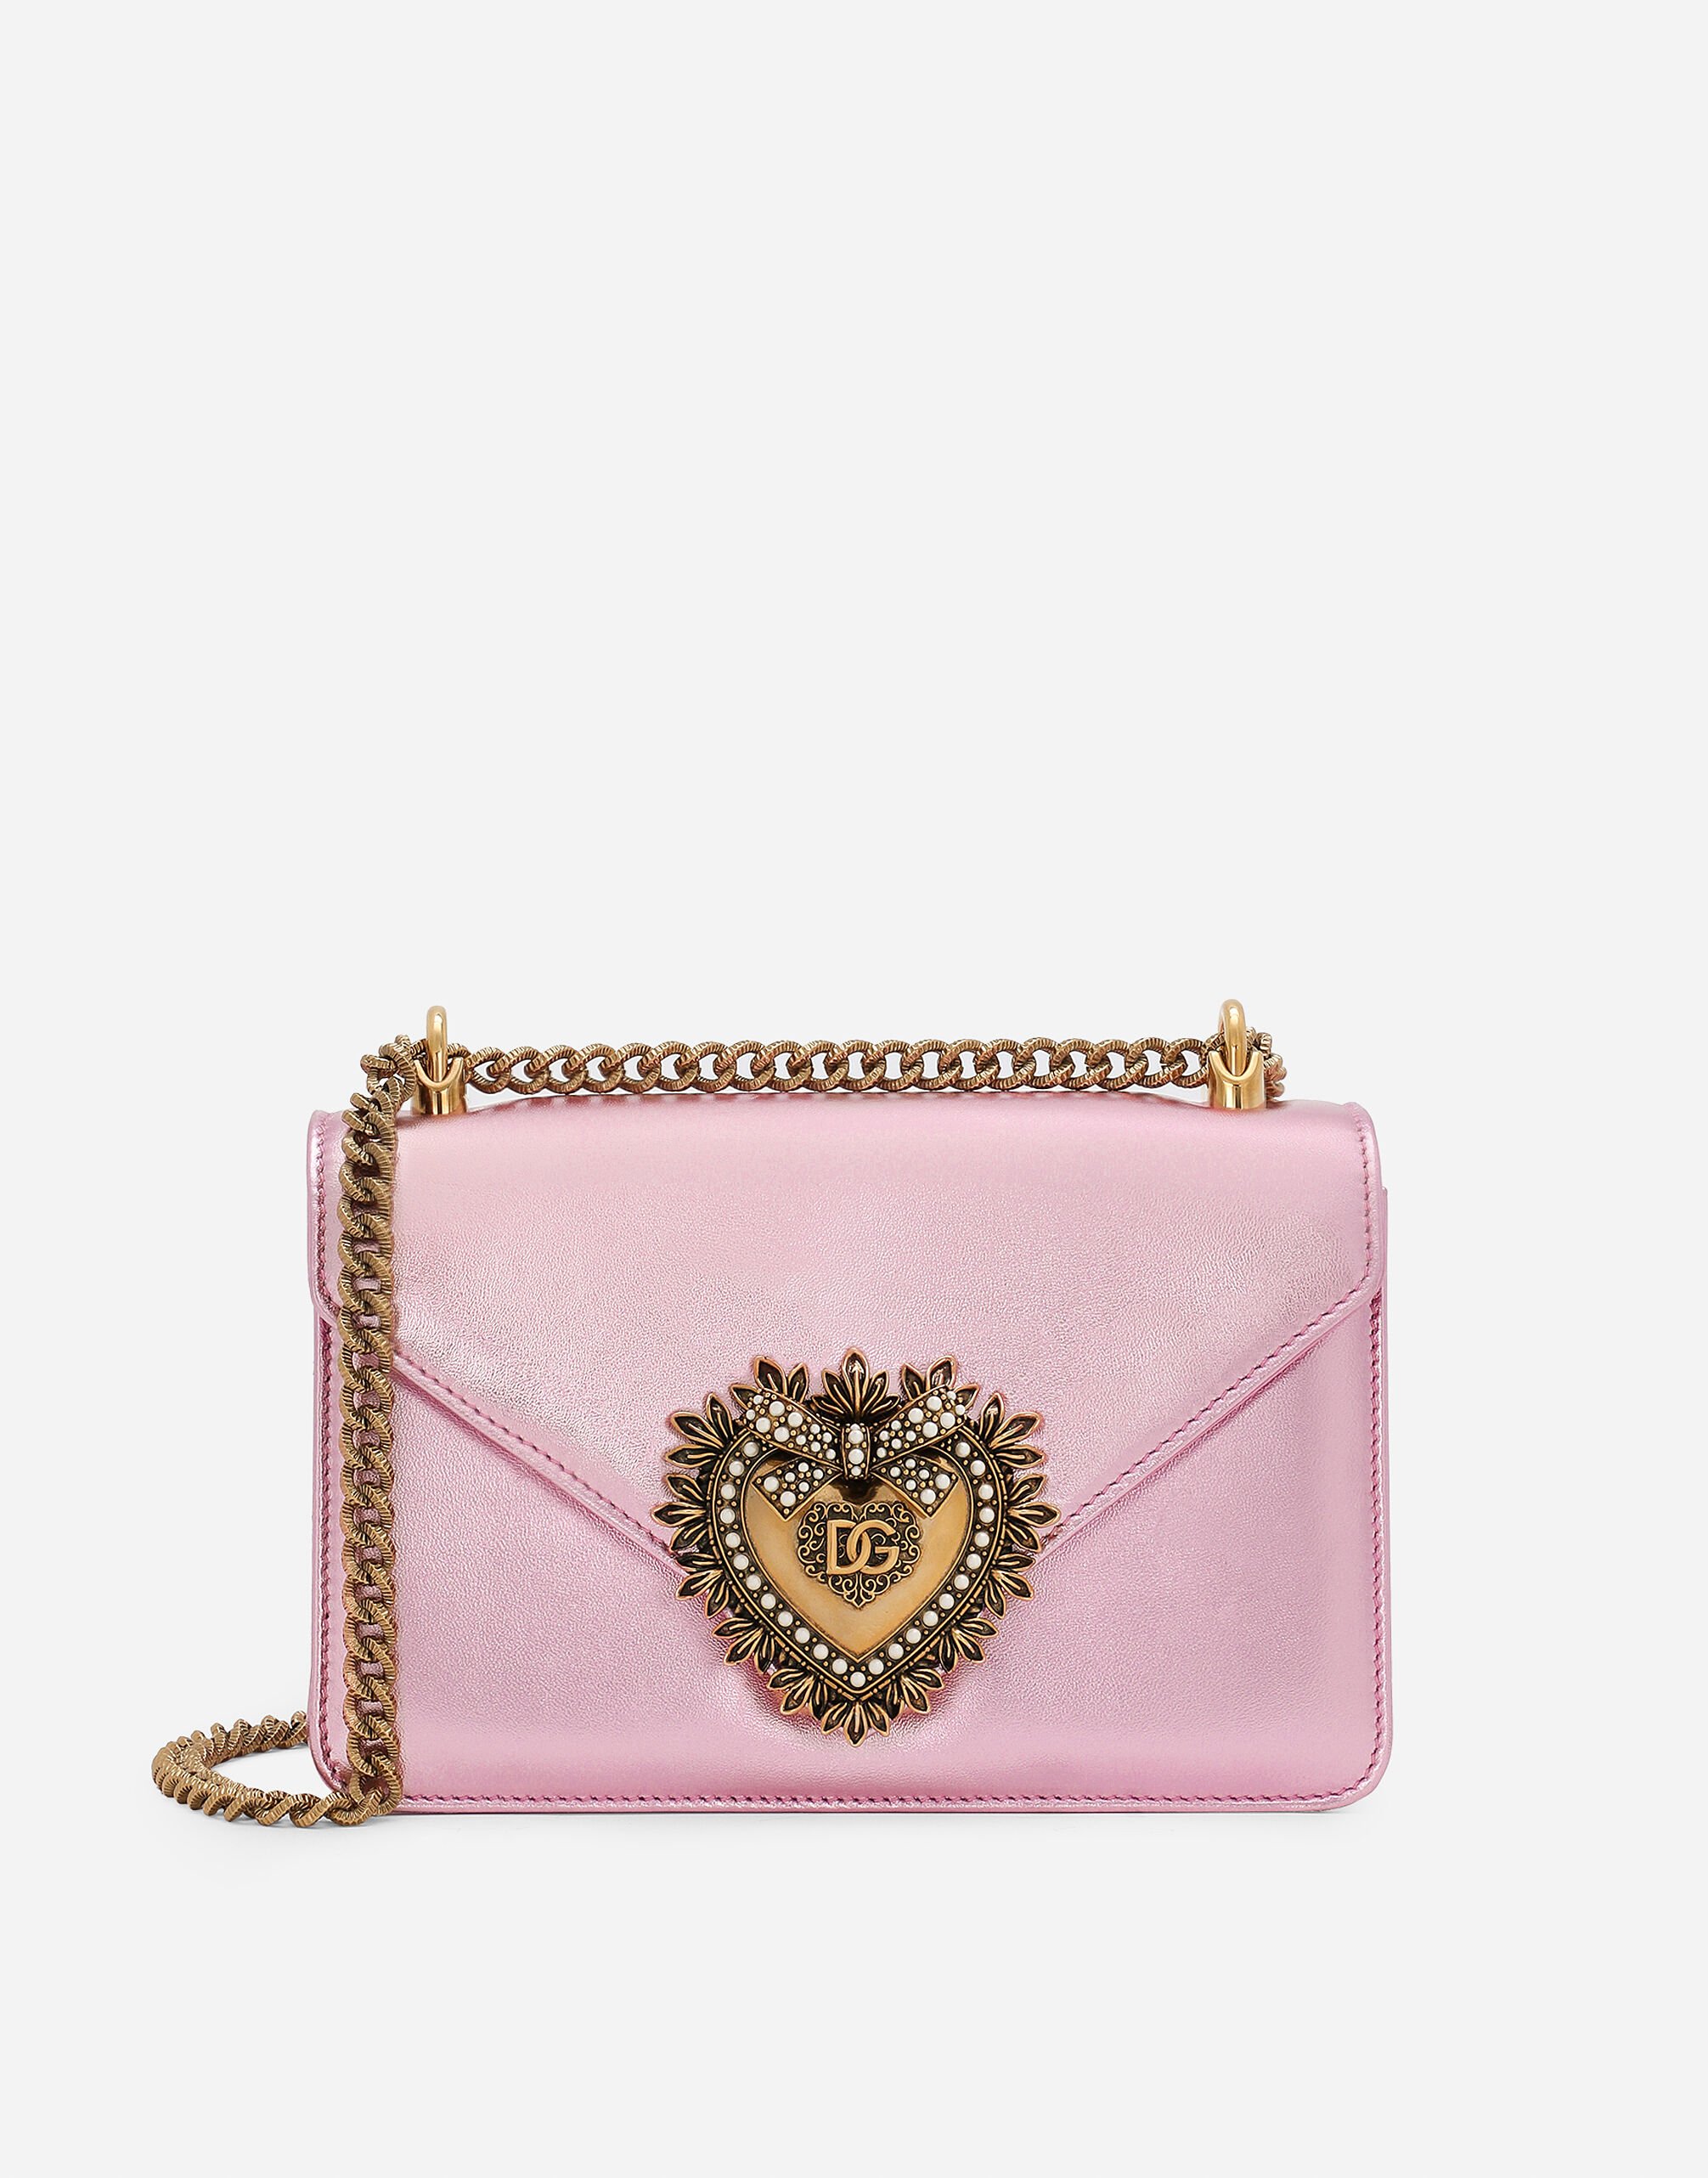 Dolce & Gabbana Devotion shoulder bag Pink BB7598AW576